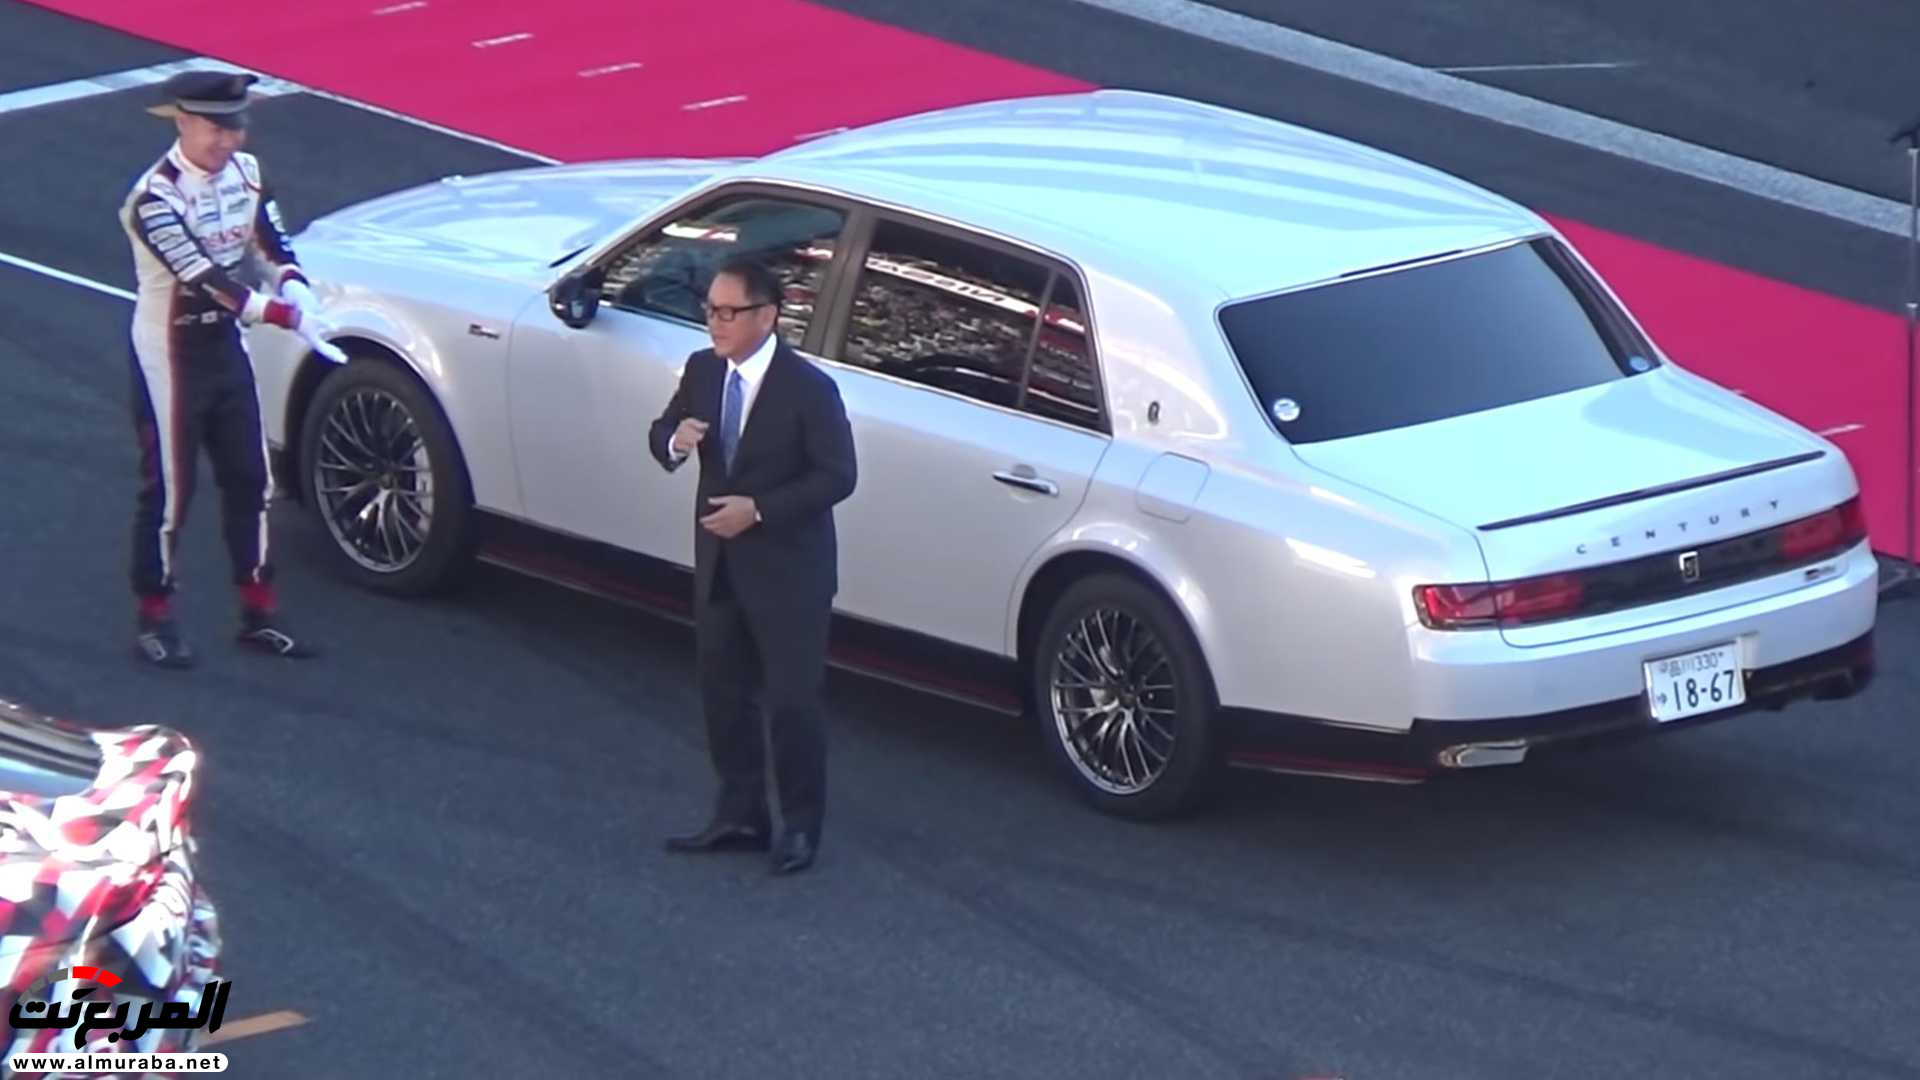 "بالفيديو" رئيس تويوتا يتباهى بسيارته الفاخرة على المضمار 56